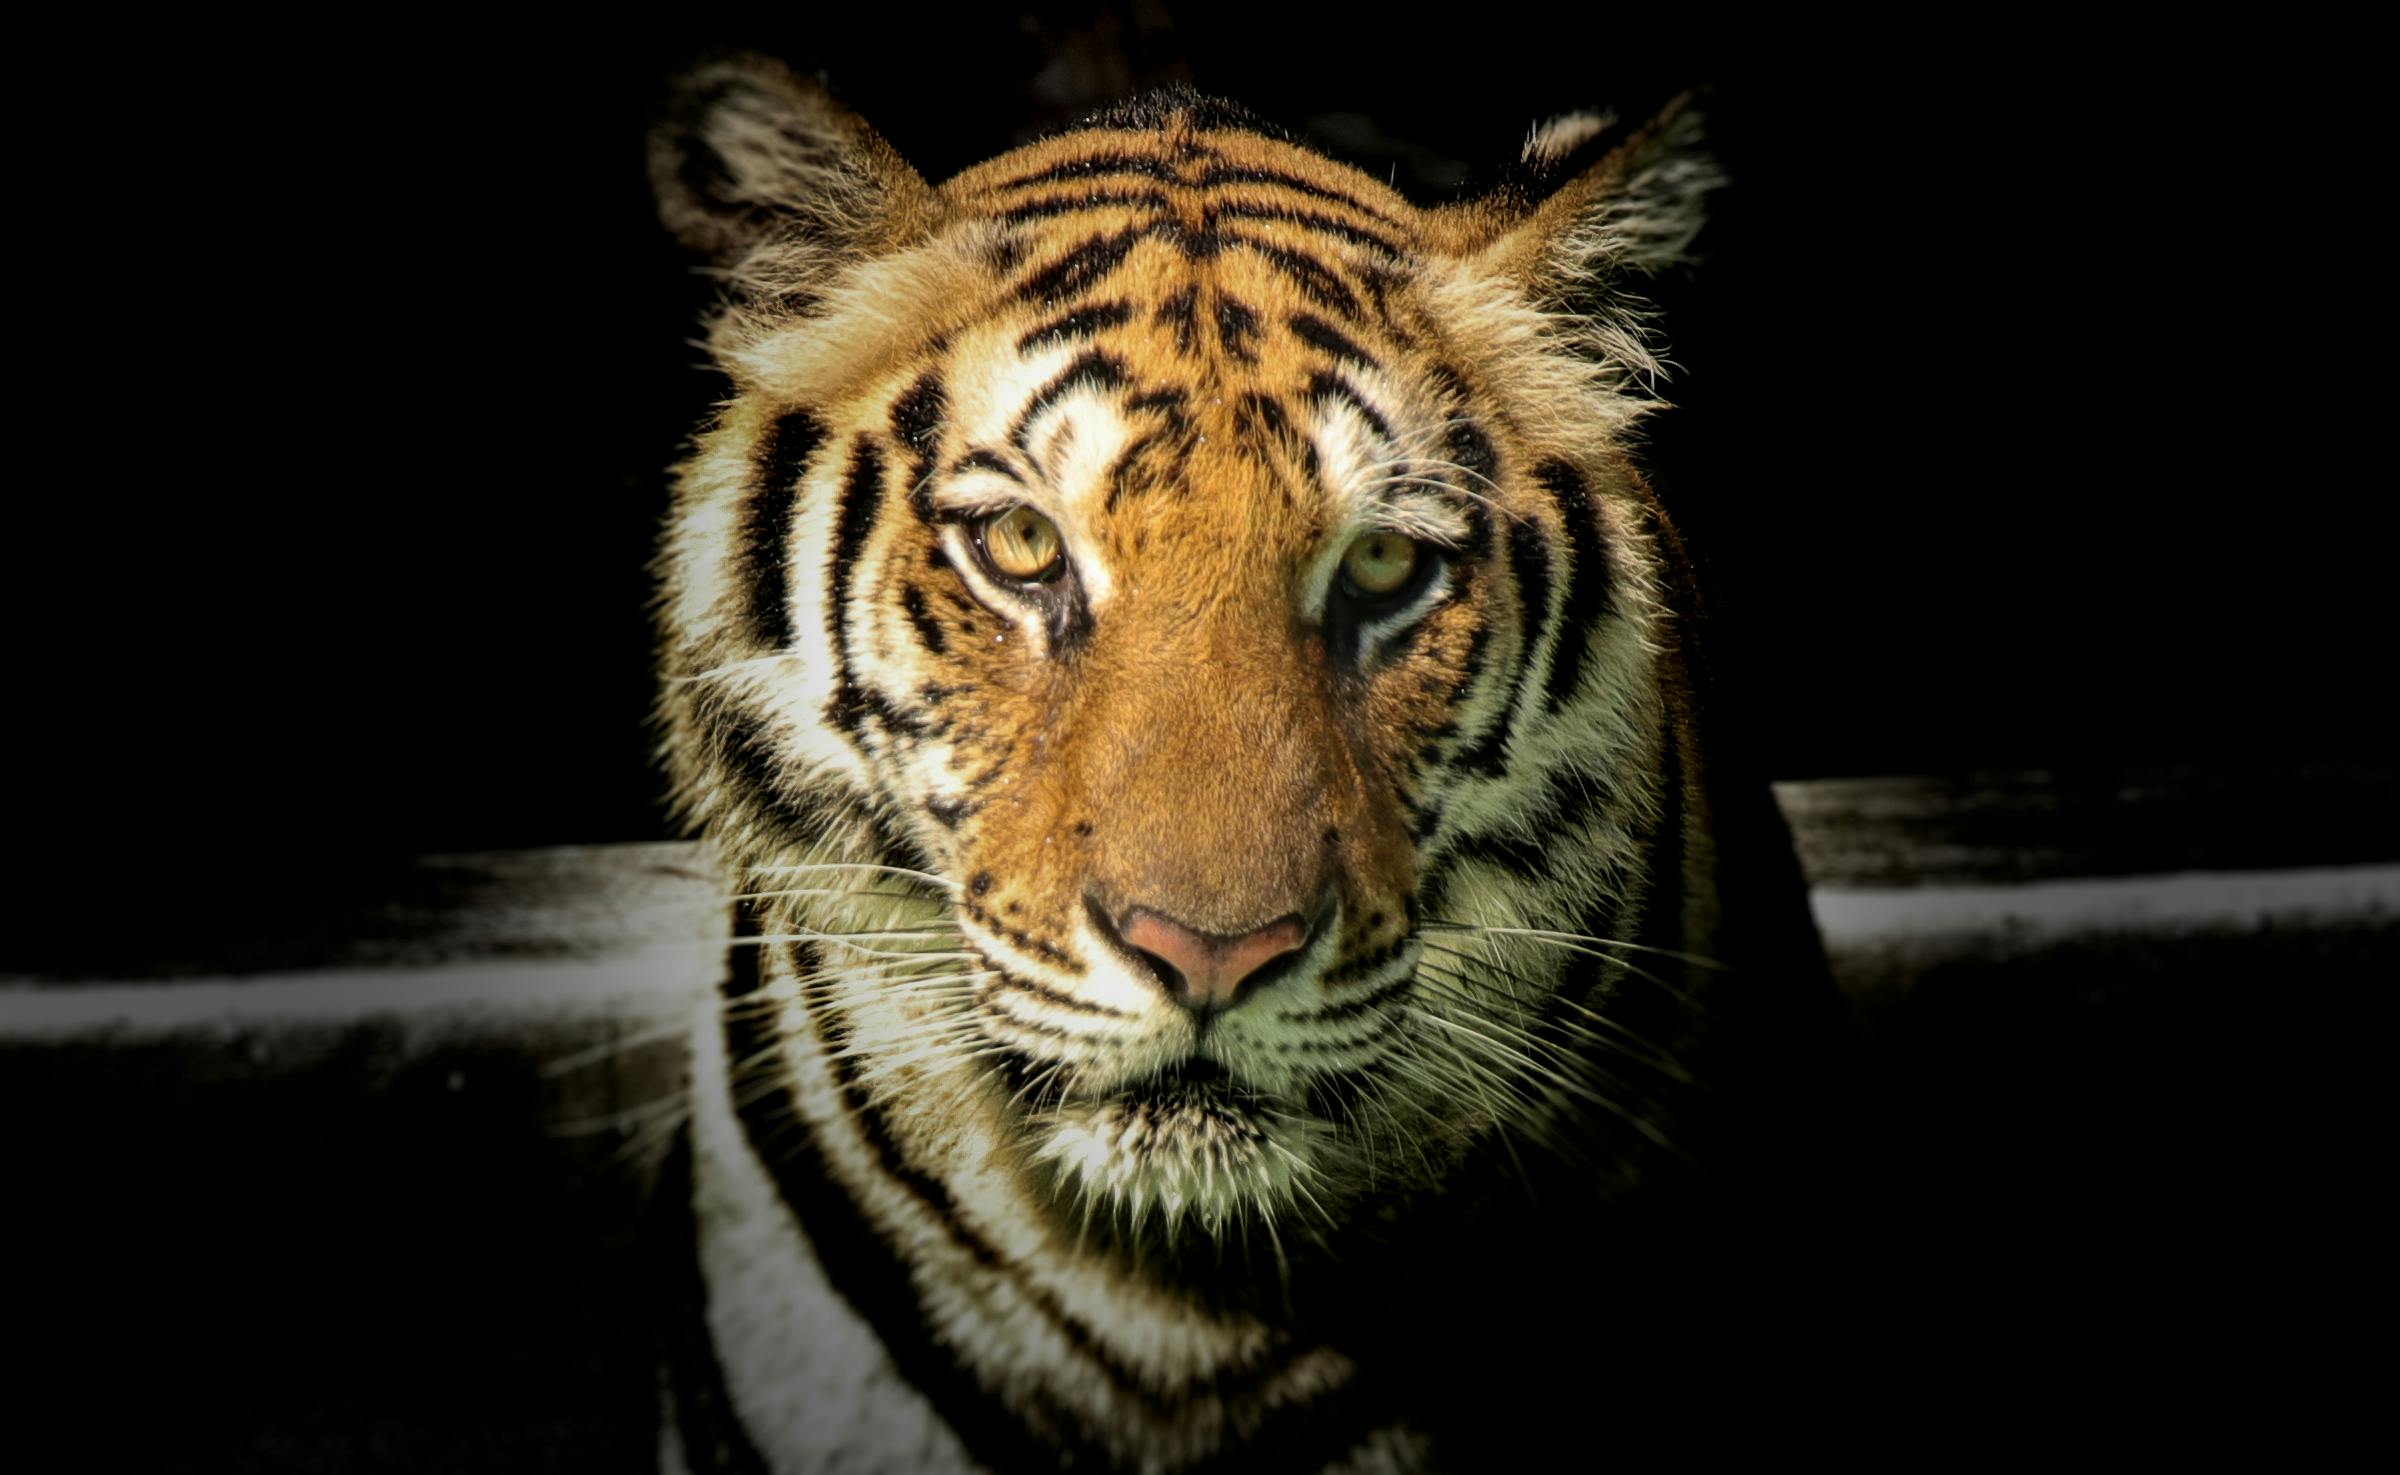 Tiger Animal Print Background, Desktop Wallpaper, Animal Print, Background  Background Image And Wallpaper for Free Download